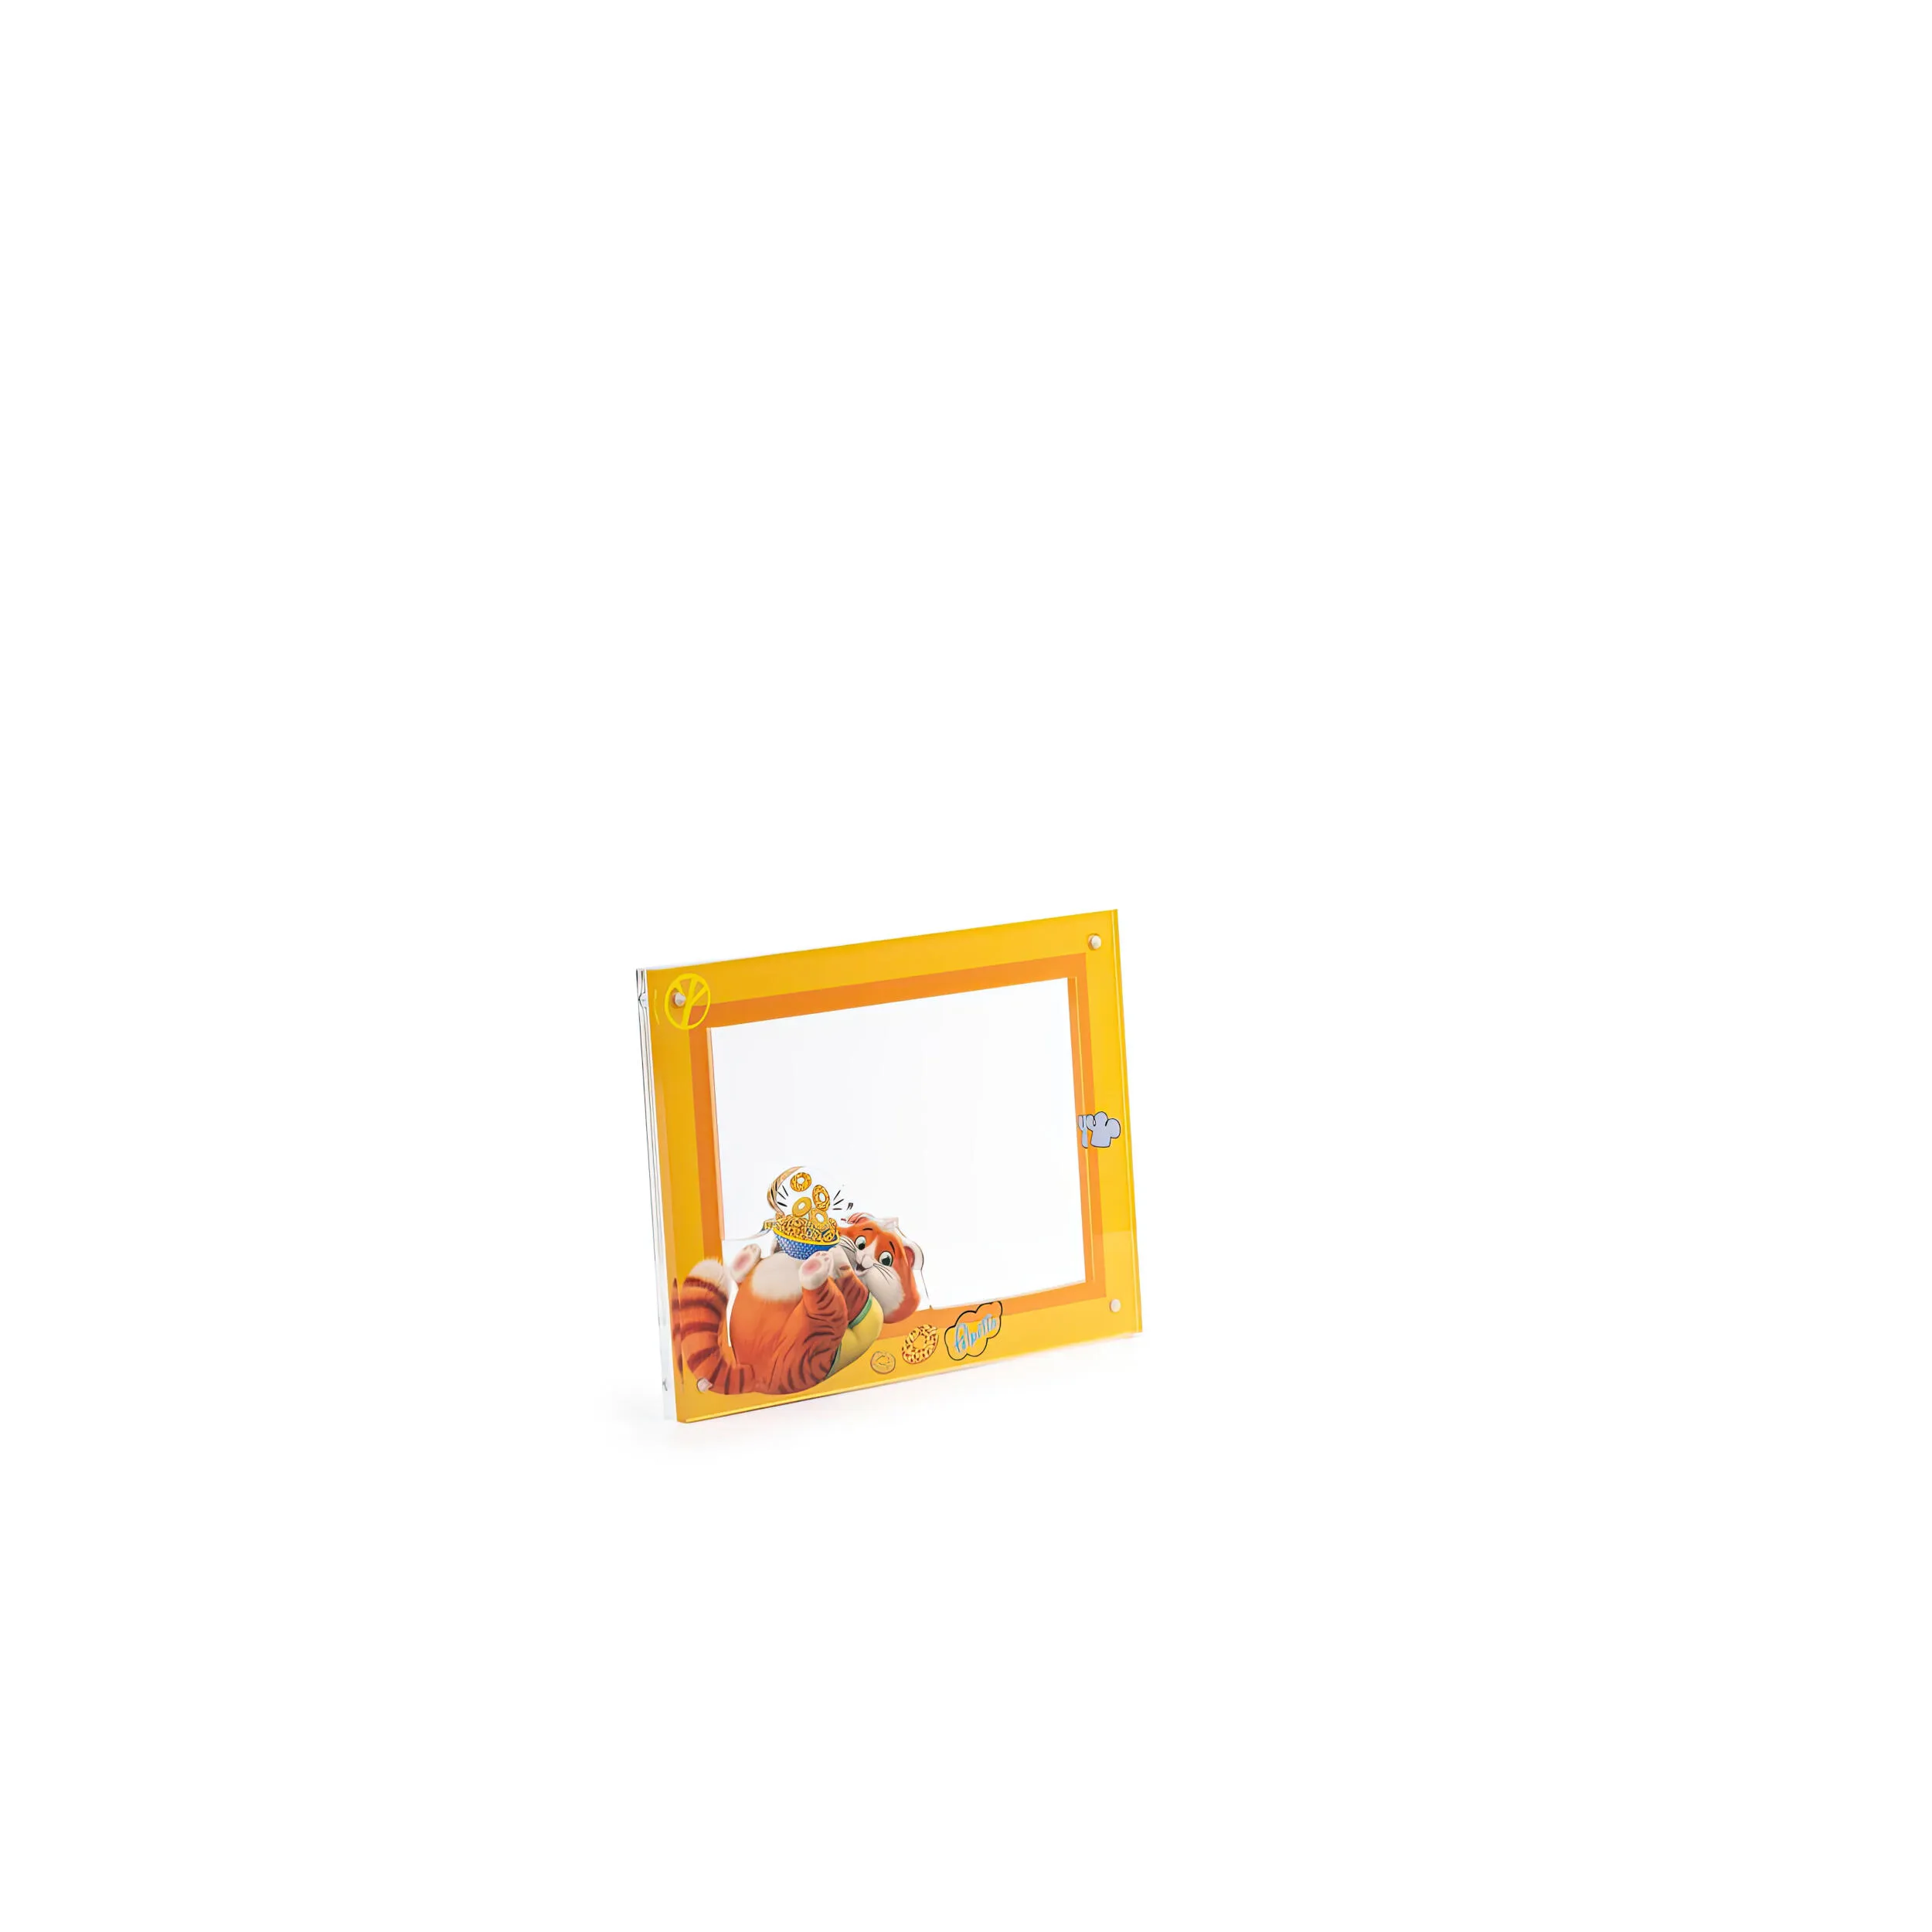 Portafoto 15x10 cm Miaoricordi Snapcat Polpetta,design Mammini Candido realizzato in Cristallo acrilico , calamite, misure 18.5x5x13.5 cm